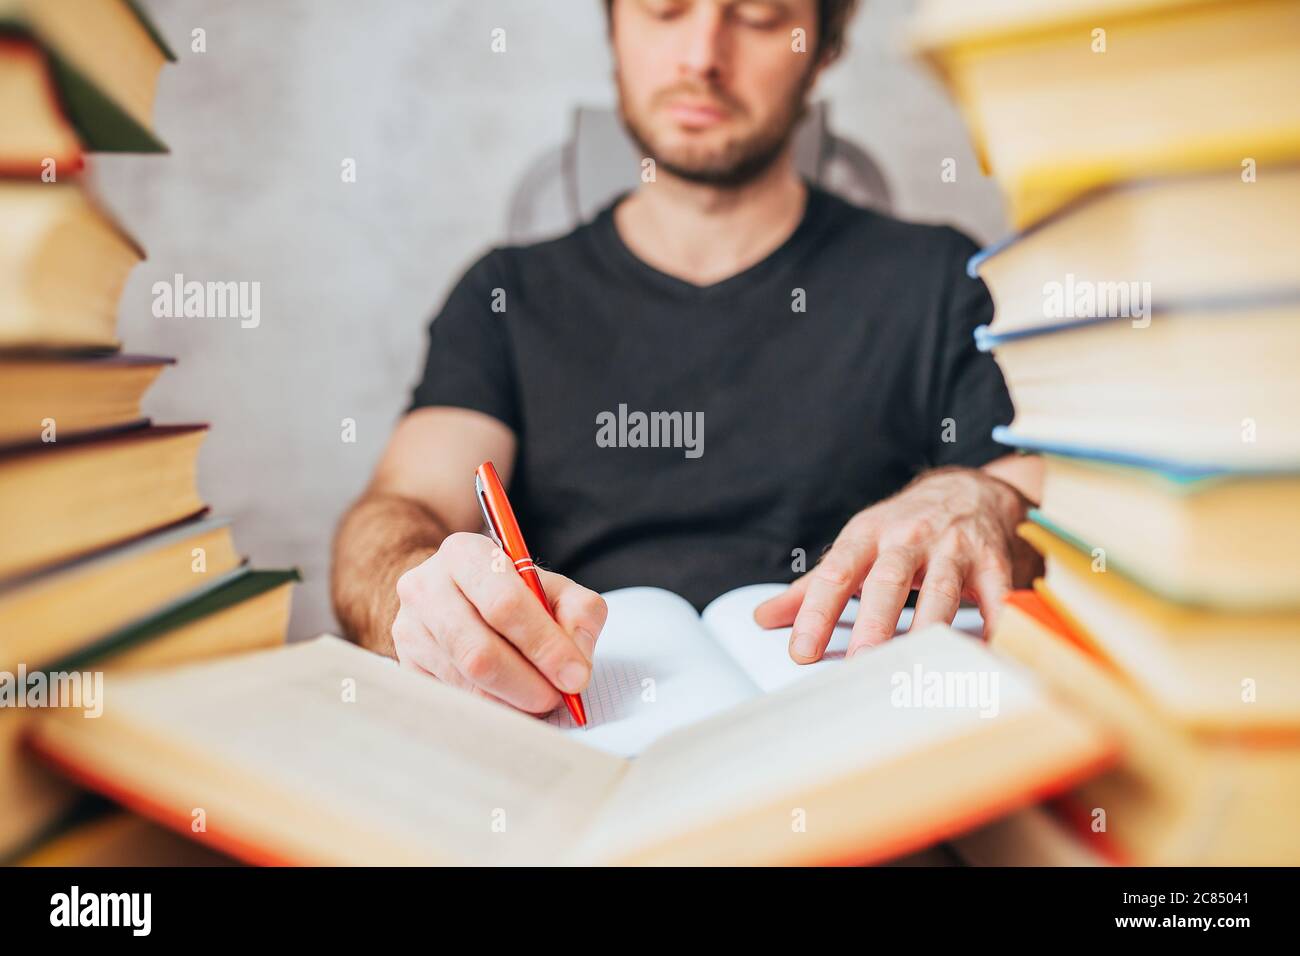 Ein Mann mit Kugelschreiber schreibt in einem Notizbuch in einer Bibliothek, umgeben von Büchern - wissenschaftliche Arbeit Stockfoto